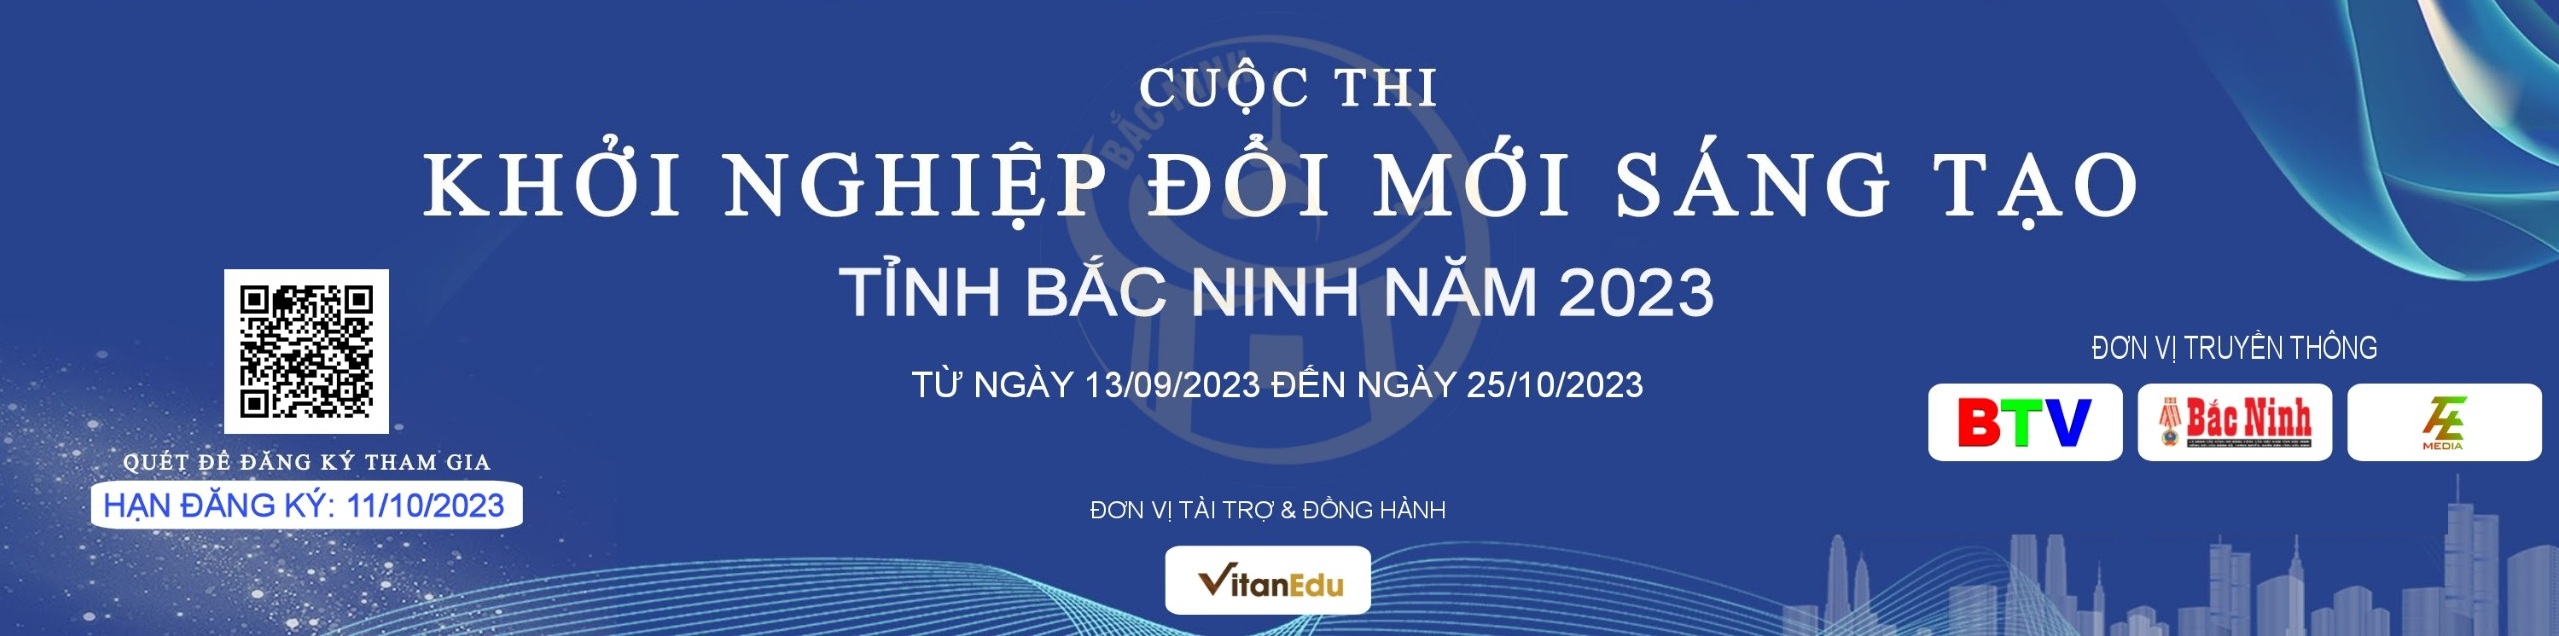 Cuộc thi Khởi nghiệp Đổi mới sáng tạo tỉnh Bắc Ninh năm 2023